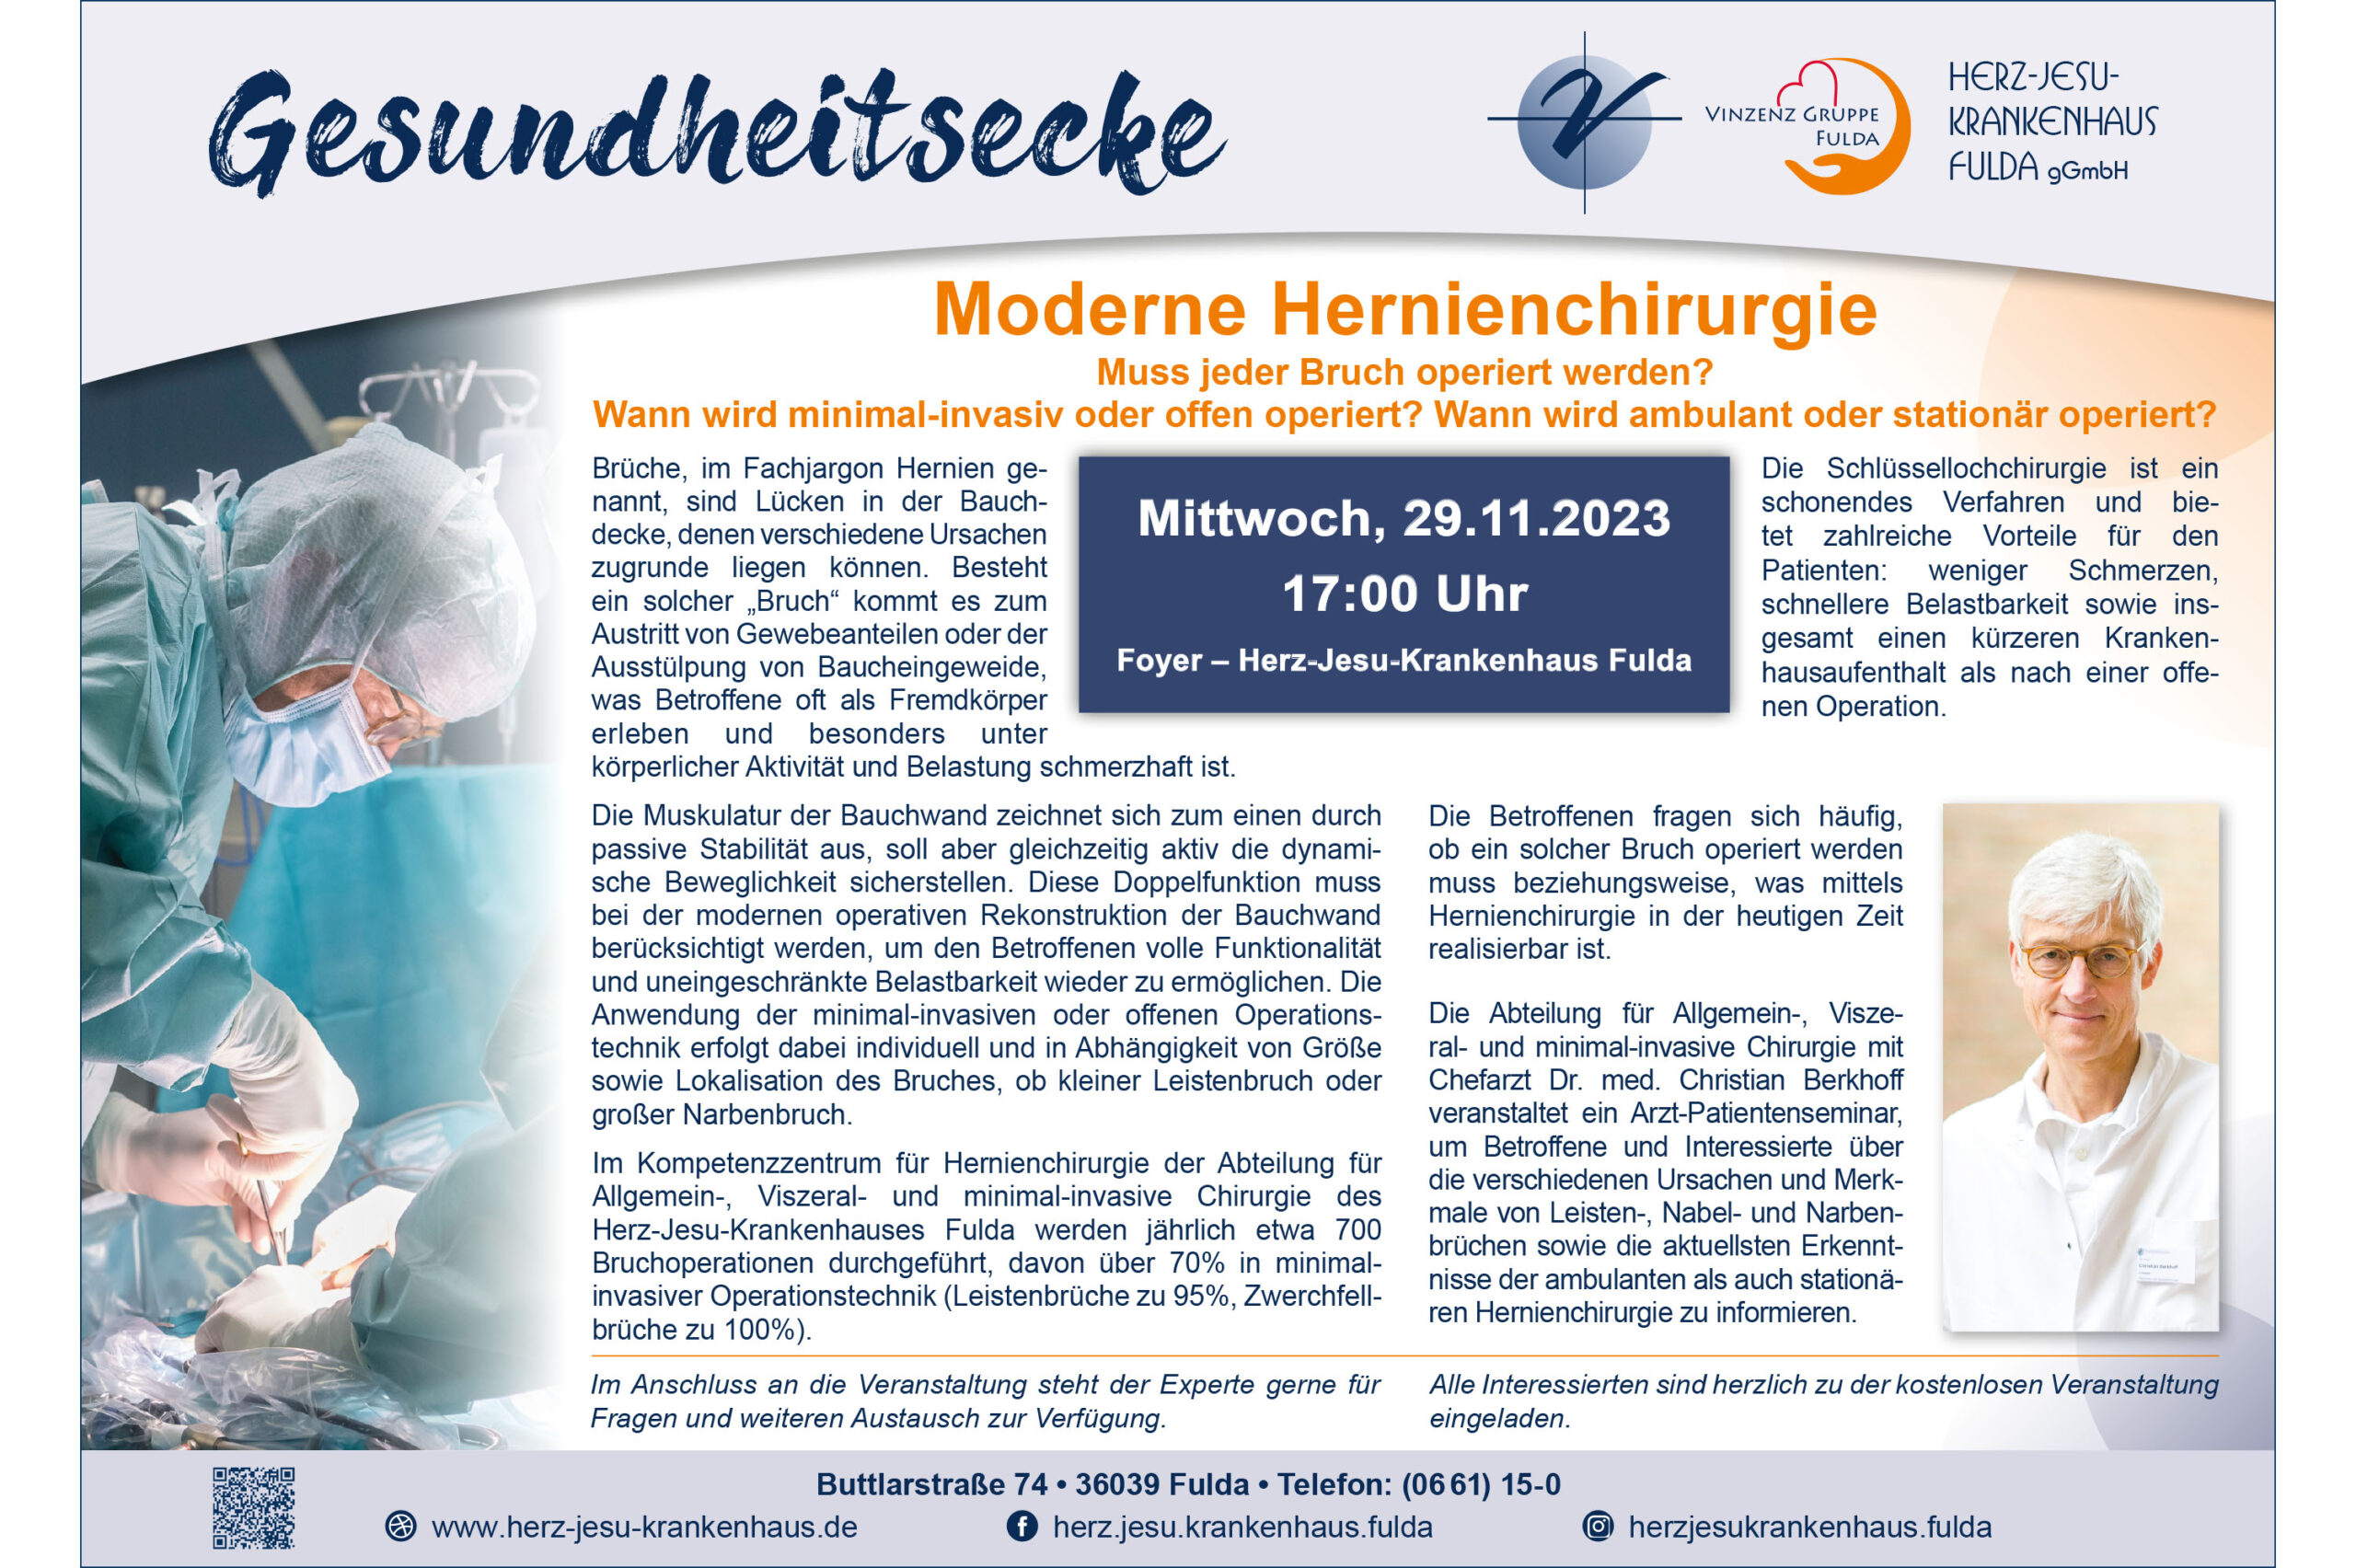 Gesundheitsecke: Hernientag - Moderne Hernienchirurgie